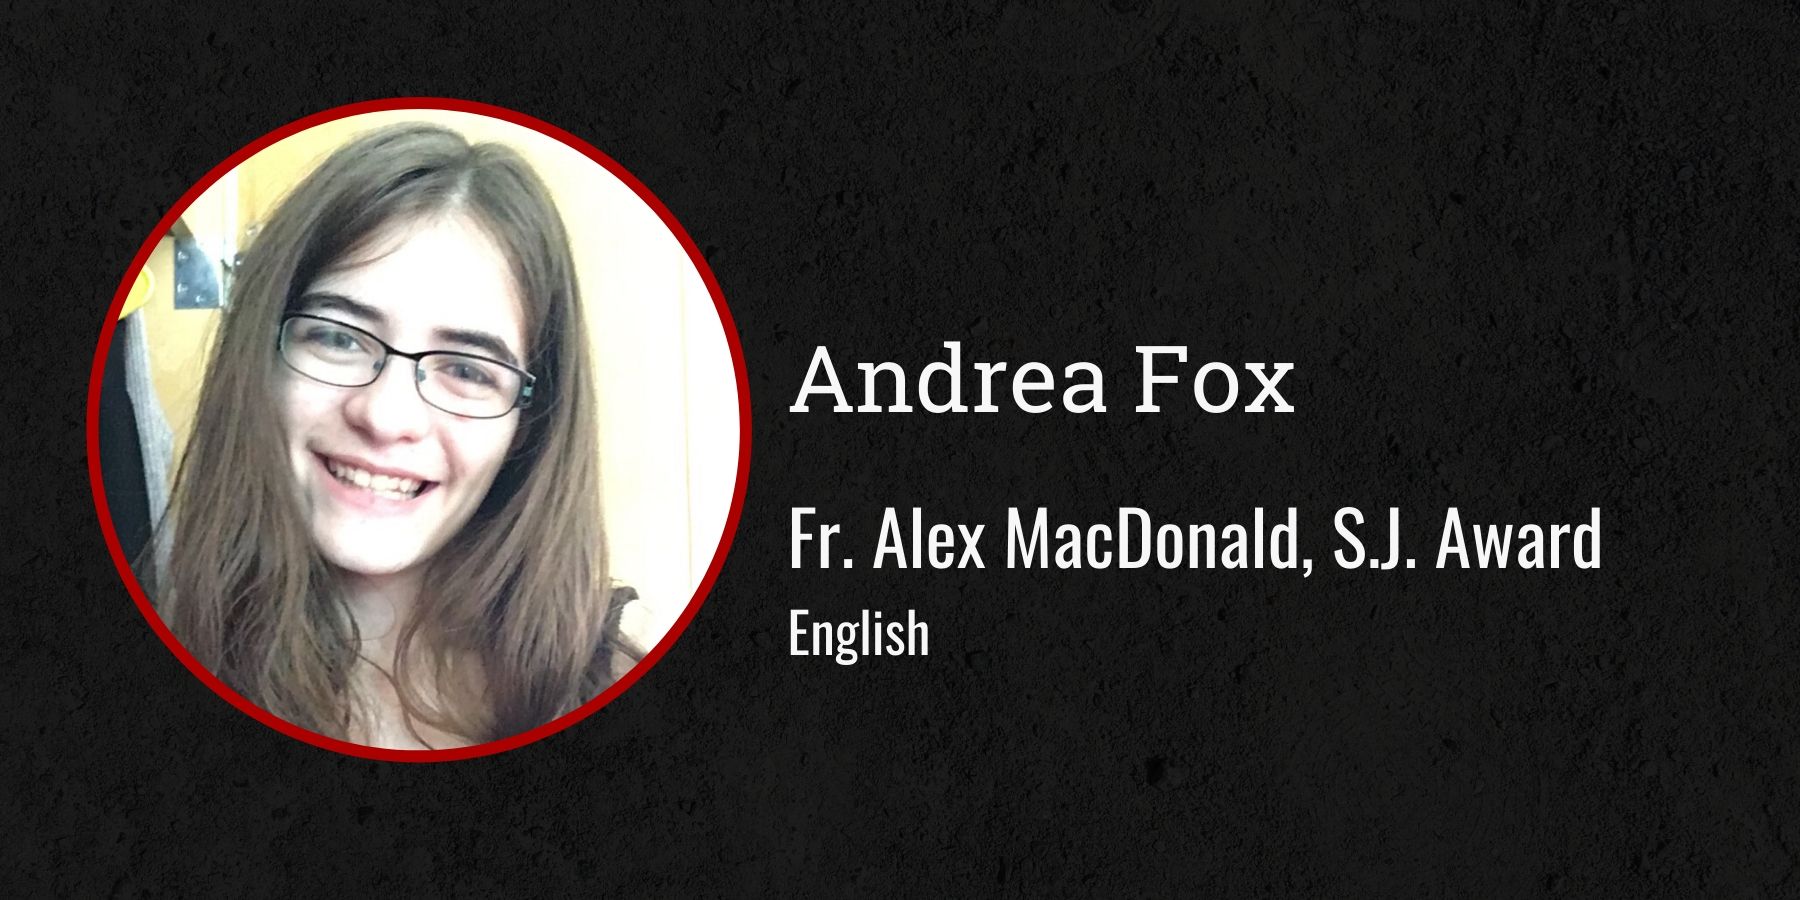 Photo of Andrea Fox and text Fr. Alex MacDonald, S.J. Award, English